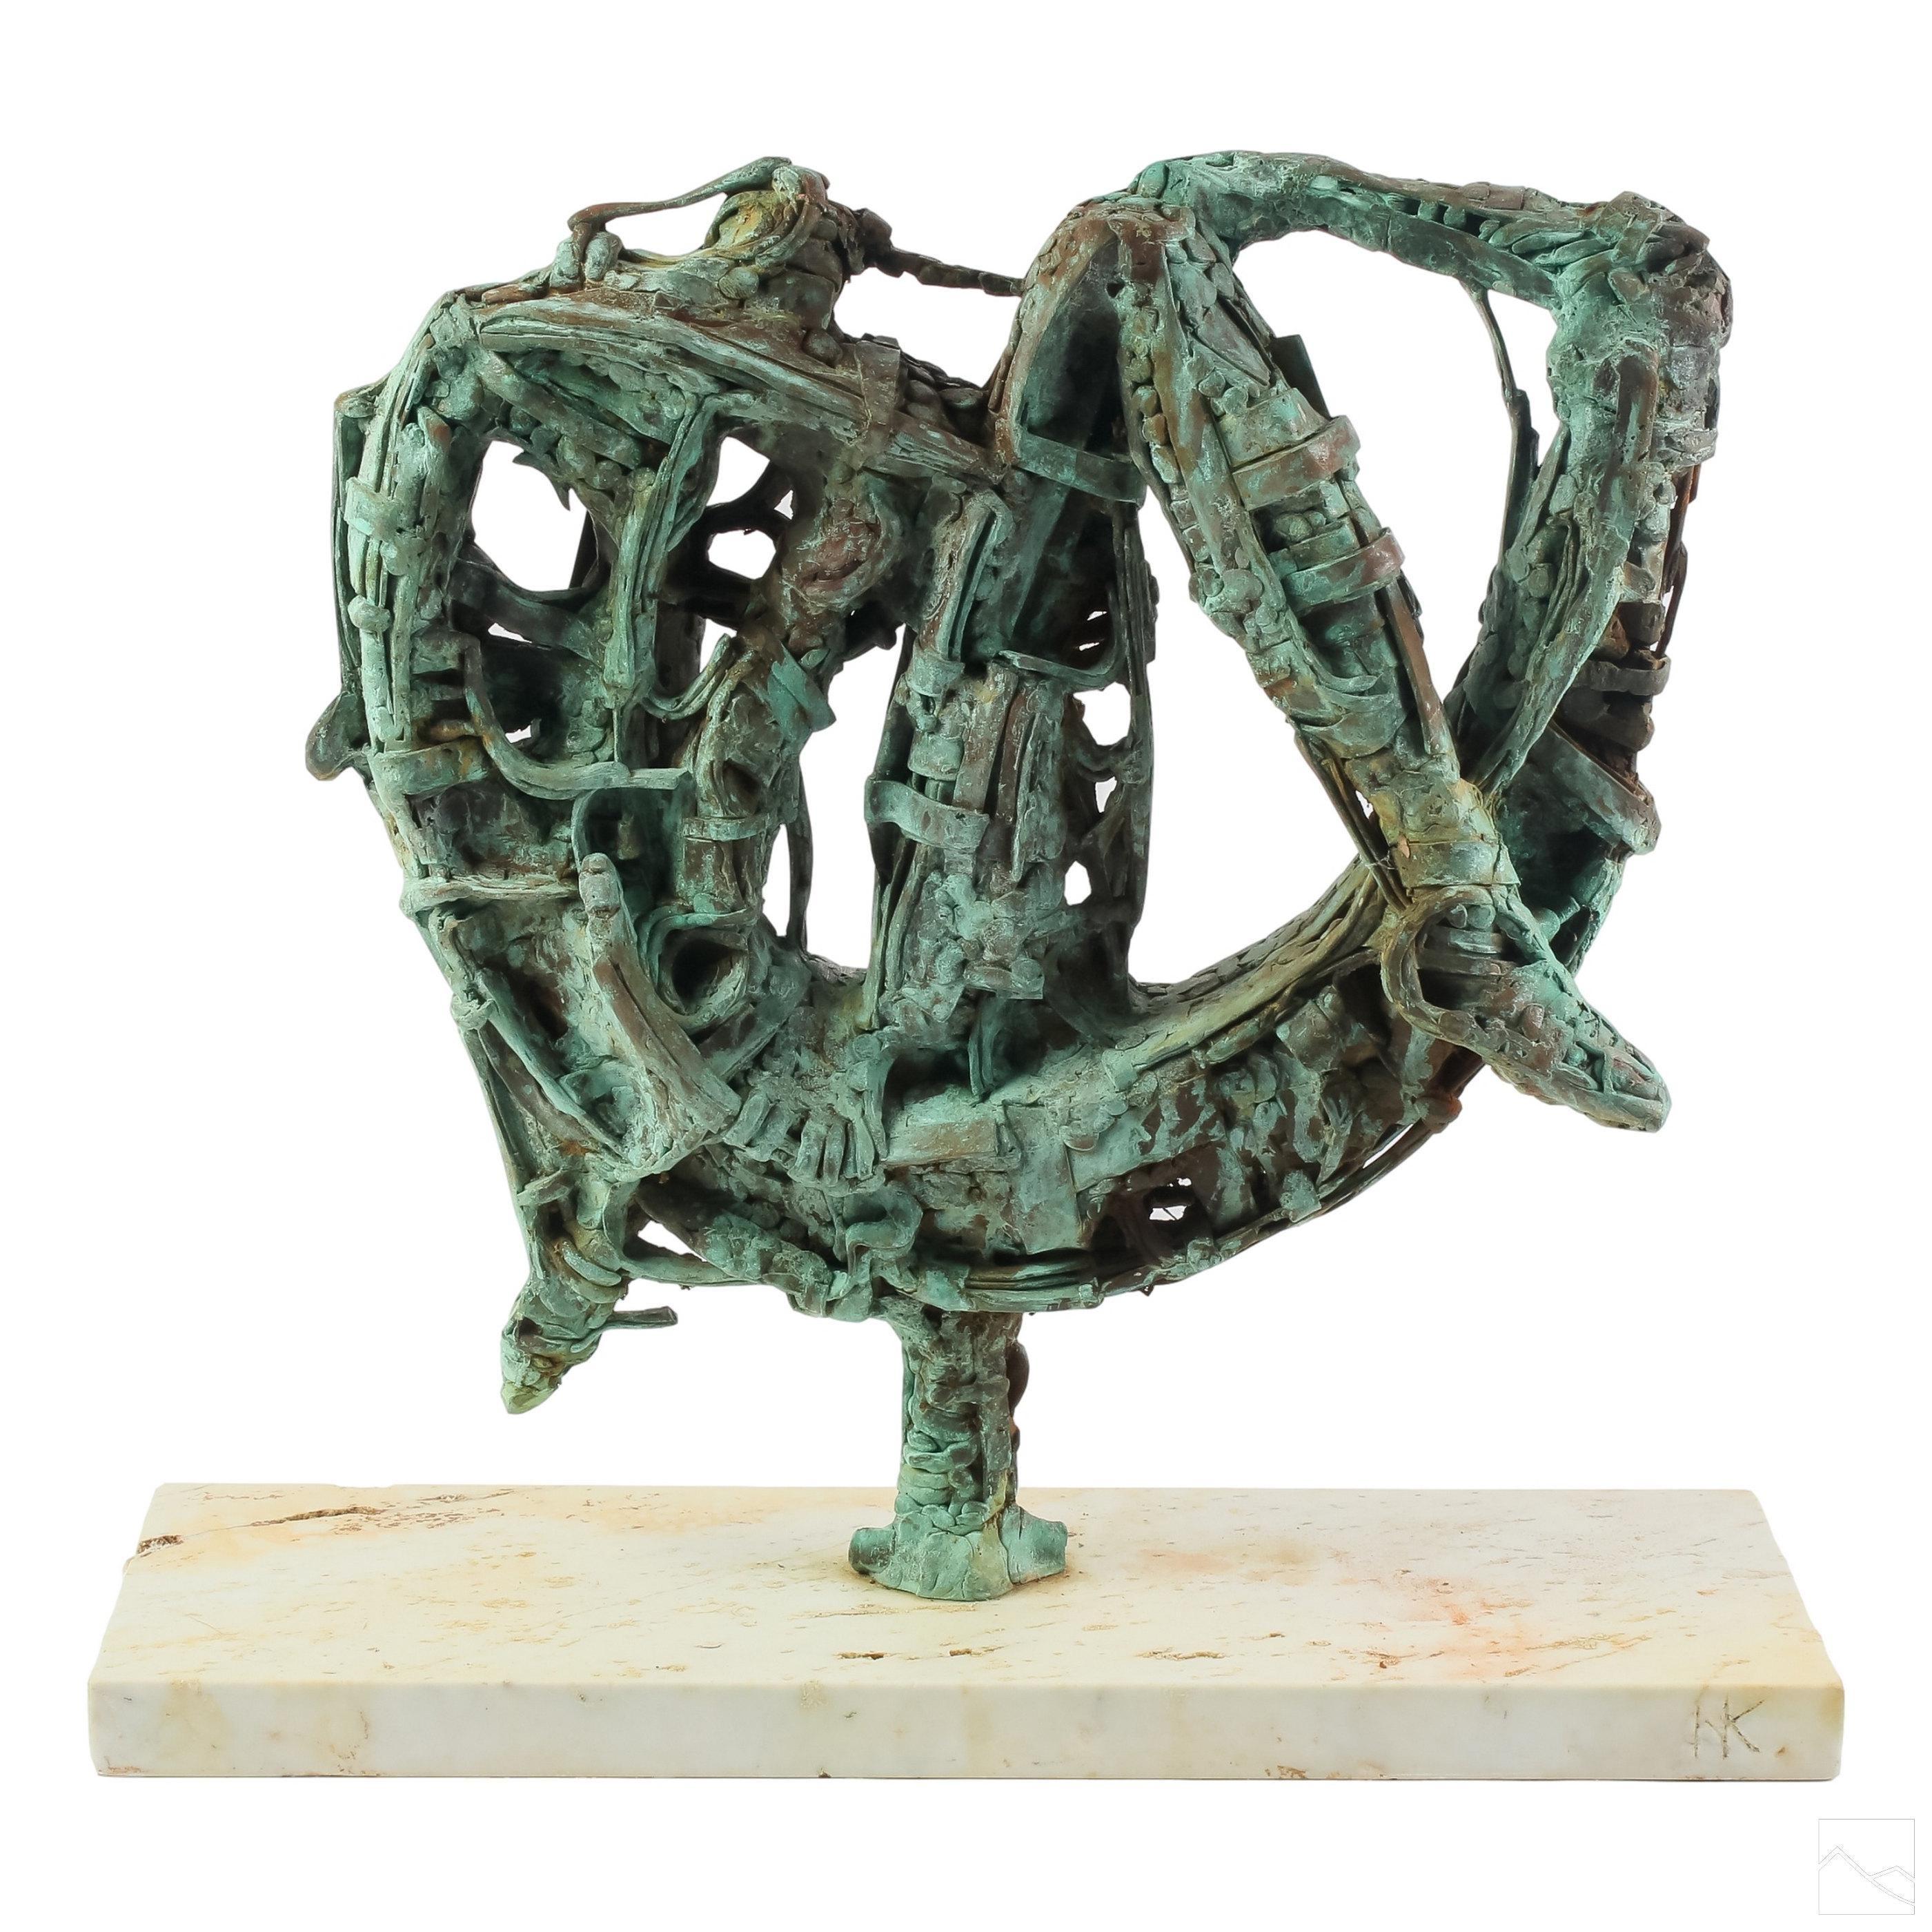 Argentine Modernist Brutalist Abstract Bronze Sculpture Jewish Latin American